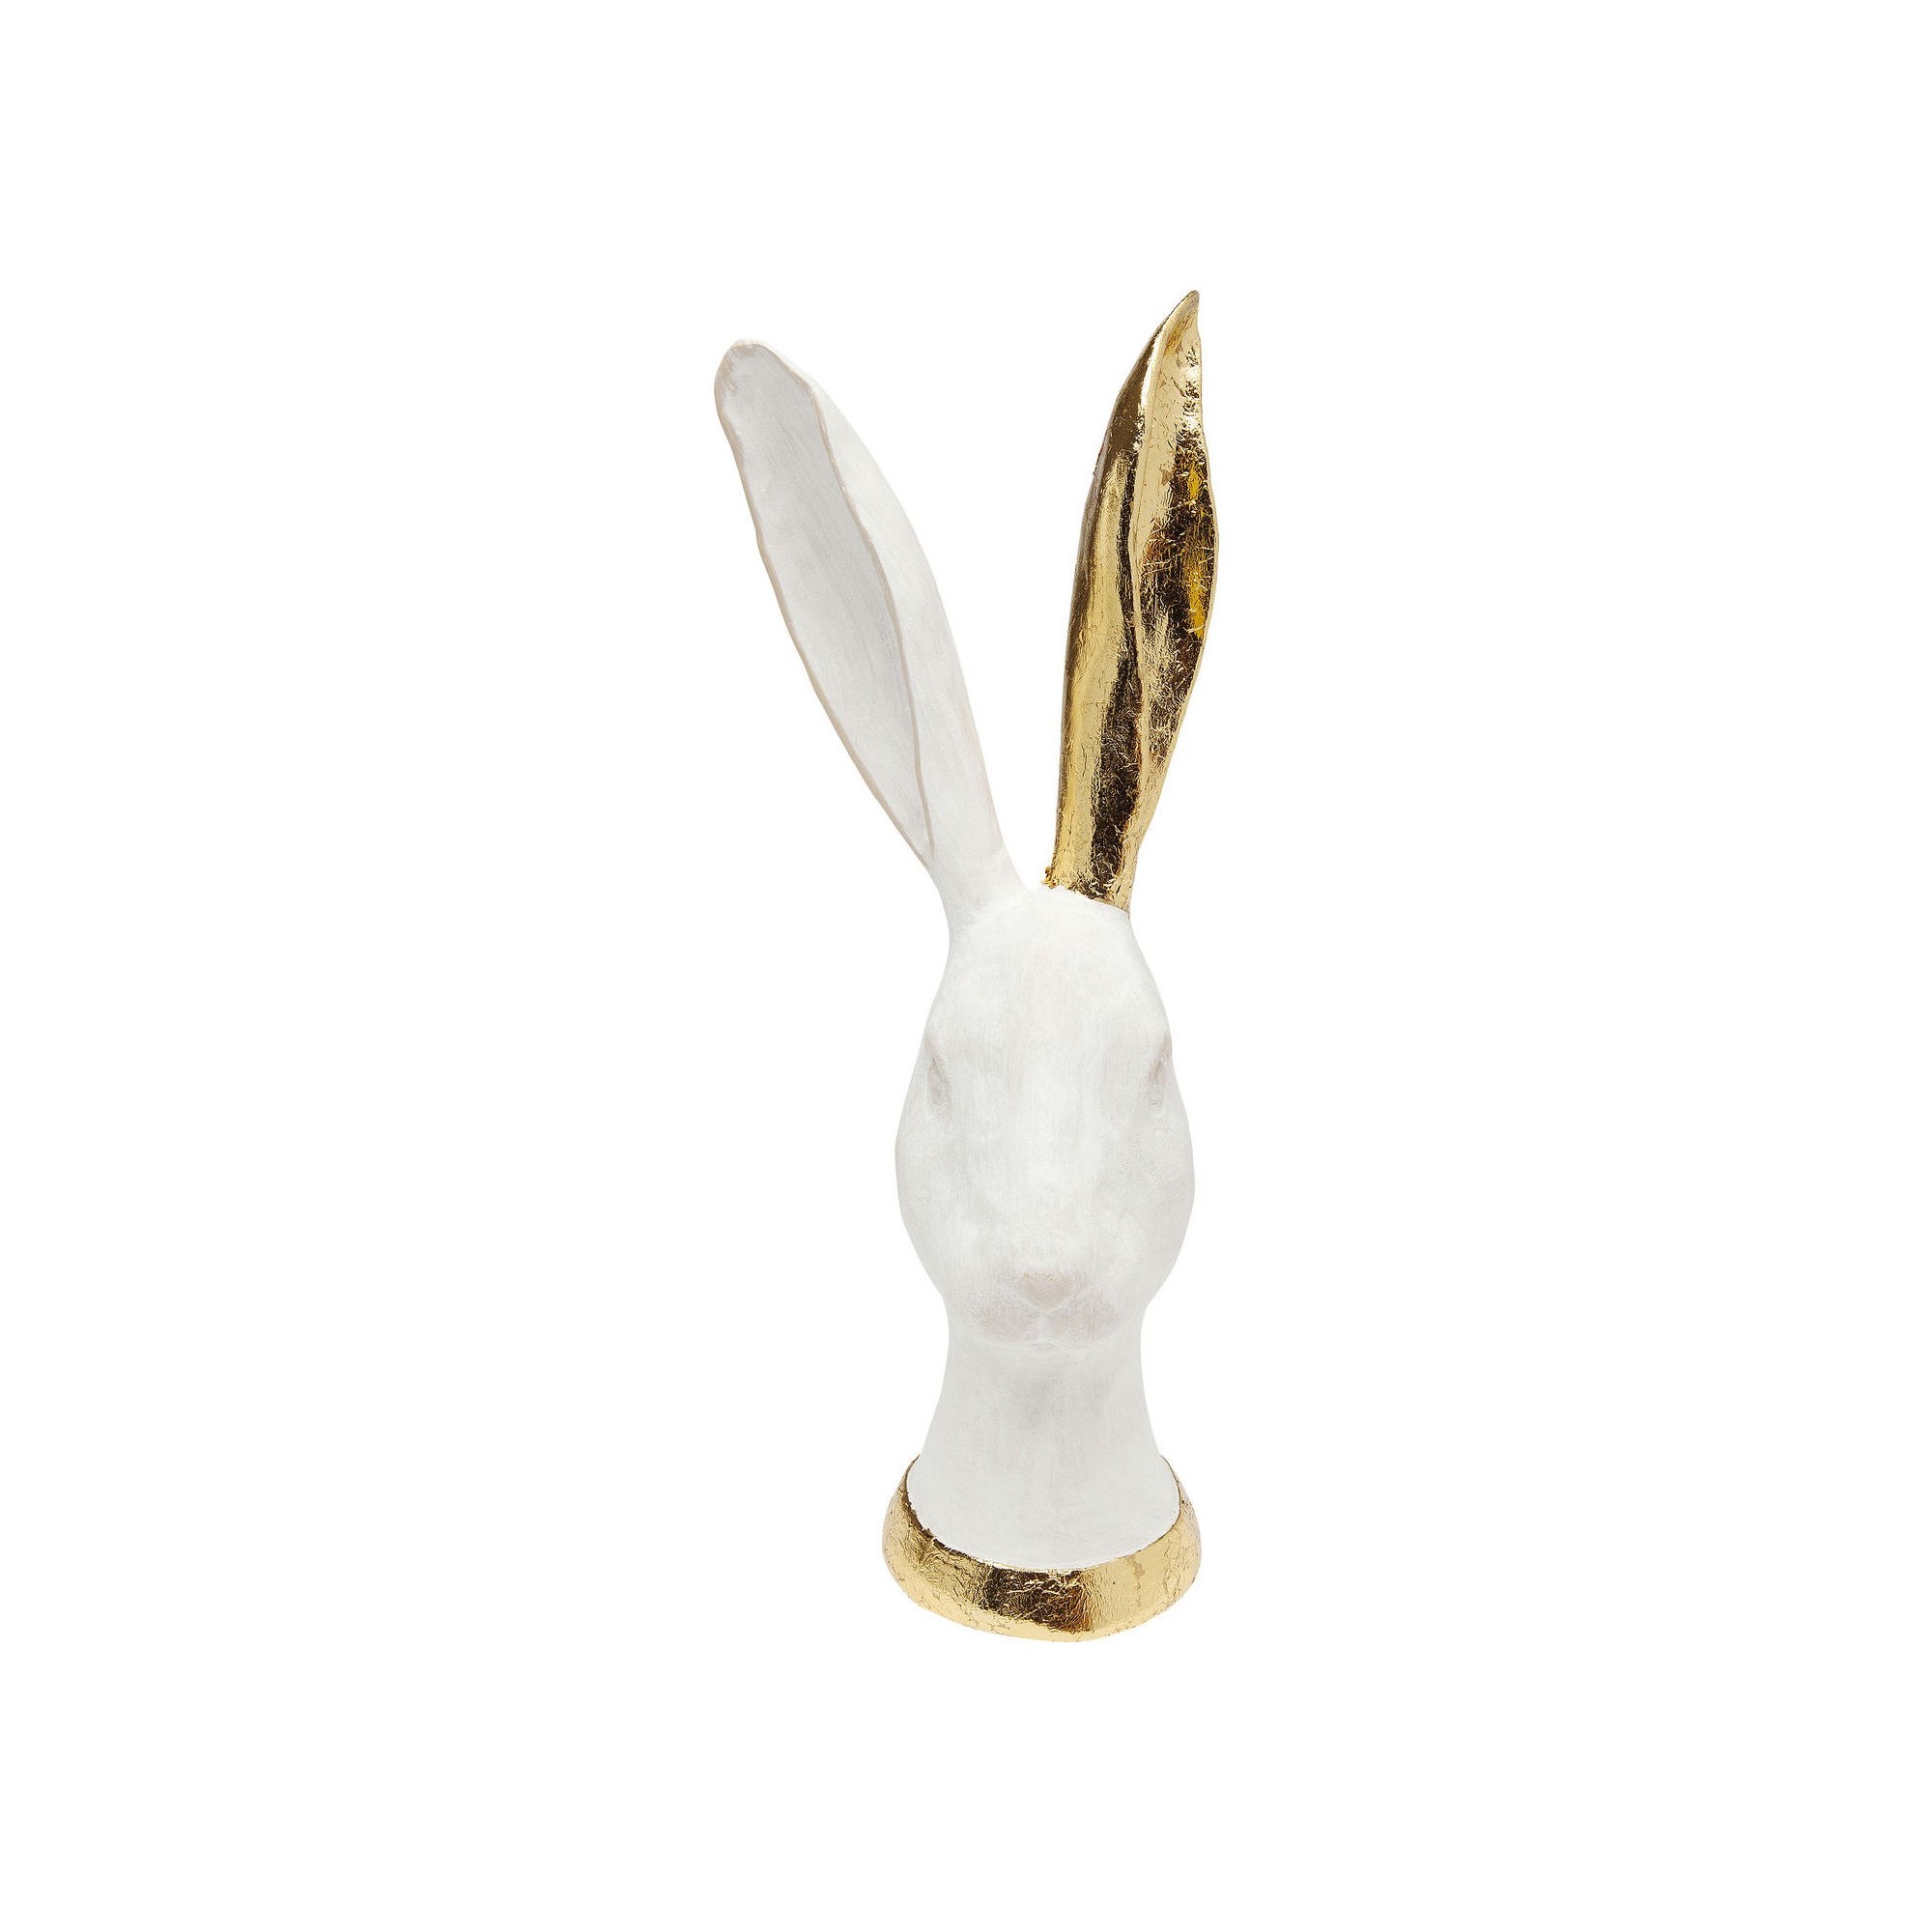 Déco tête de lapin blanc et doré 30cm Kare Designgn